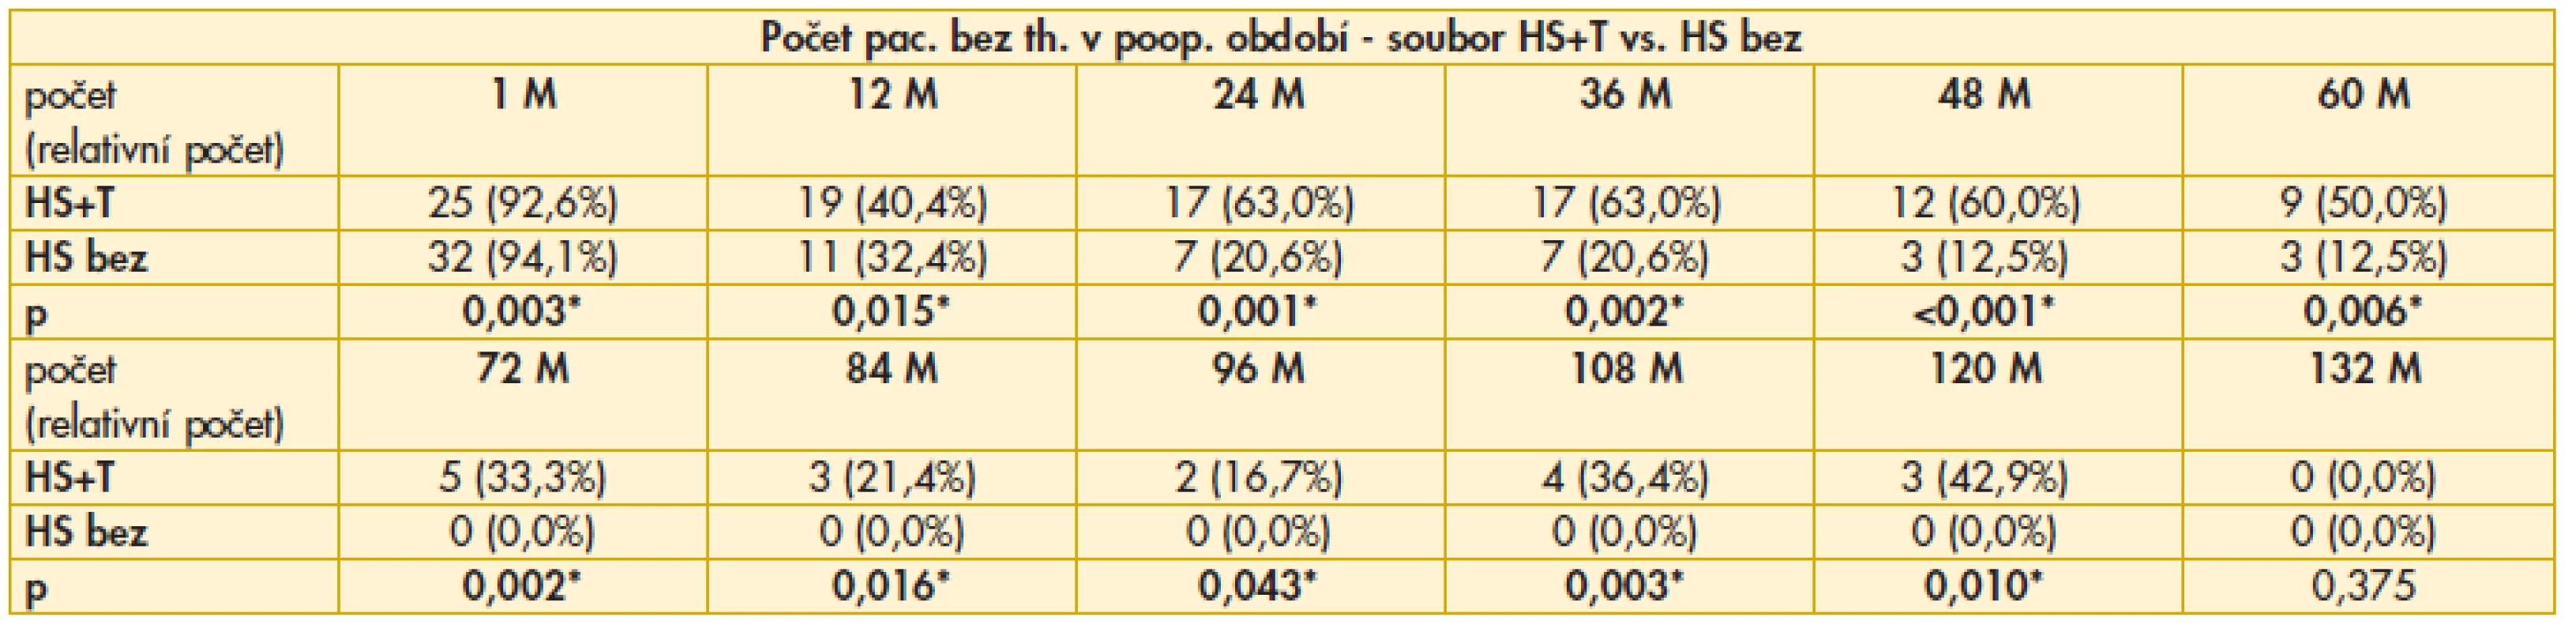 Výsledky srovnání počtu pacientů bez nutnosti aplikace lokální antiglaukomové terapie v pooperačním období mezi soubory HS+T vs. HS bez